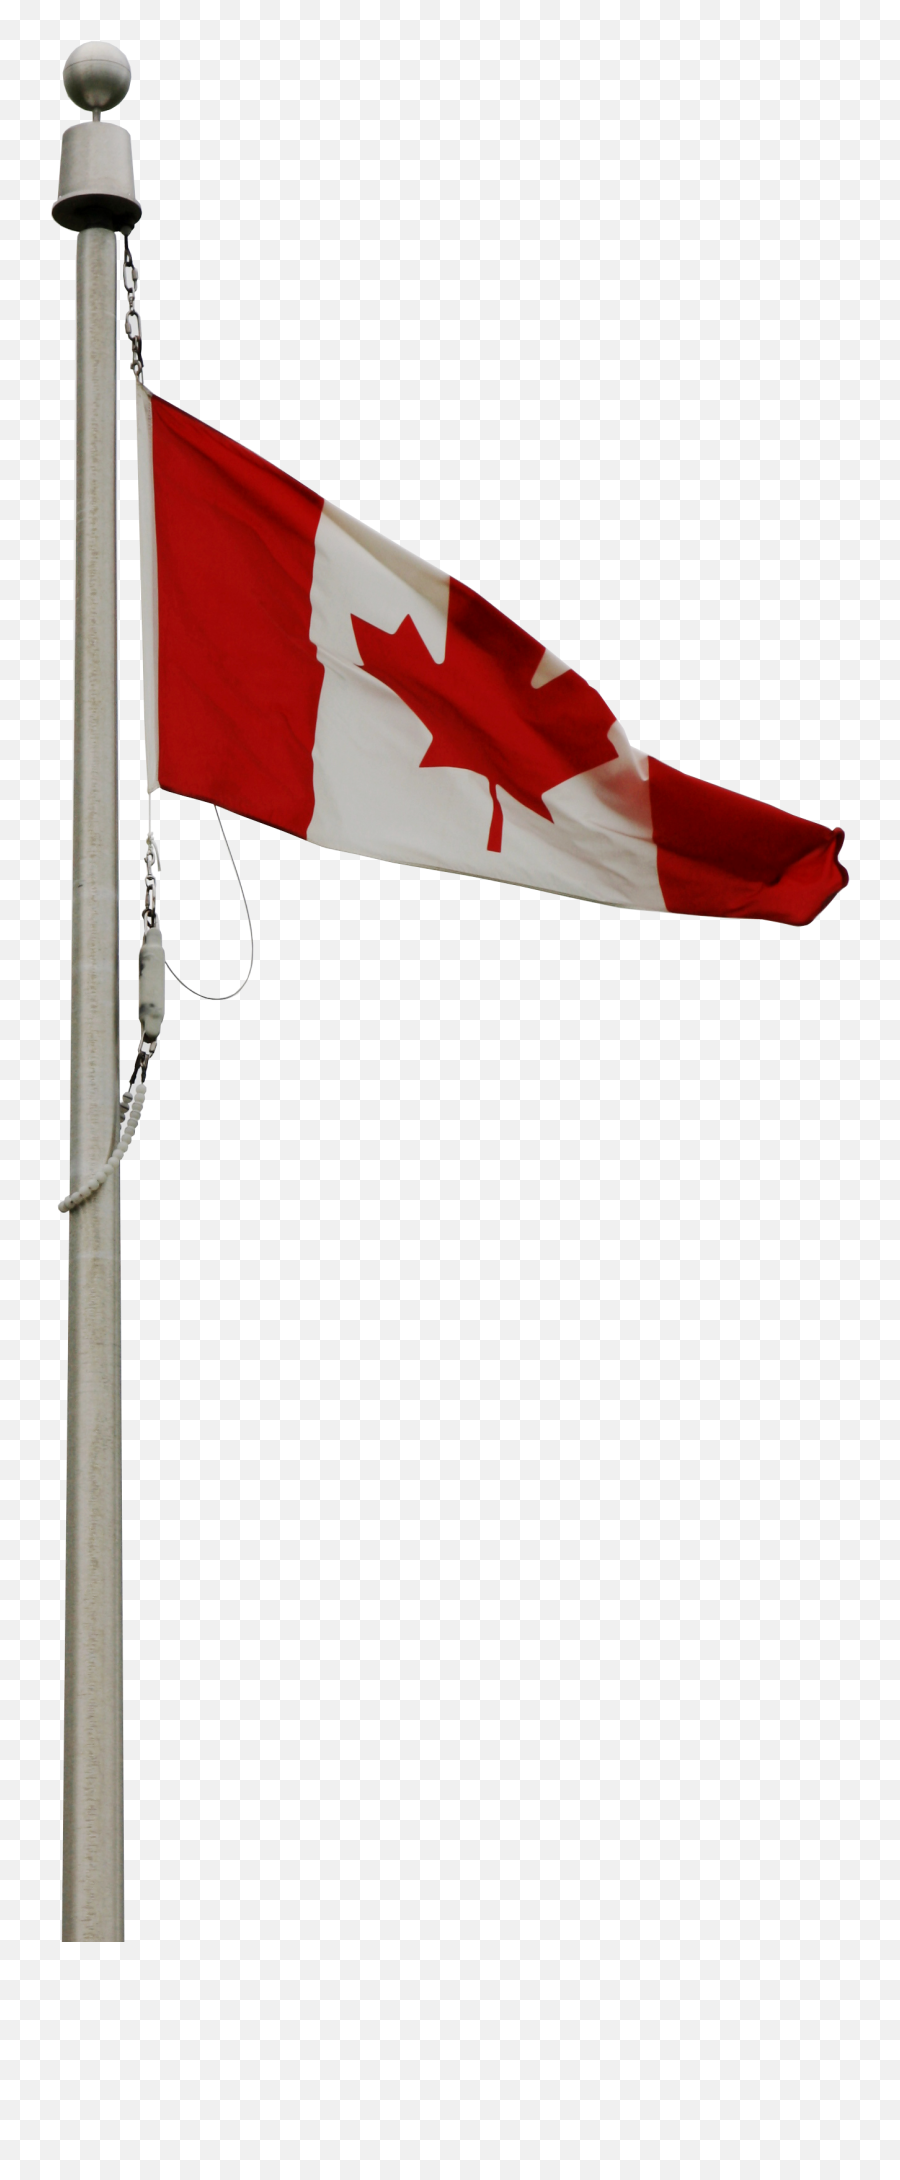 Metal Pole Lite Lighting Poles Manufacturer - Canadian Flag Pole Png,Flag Pole Png